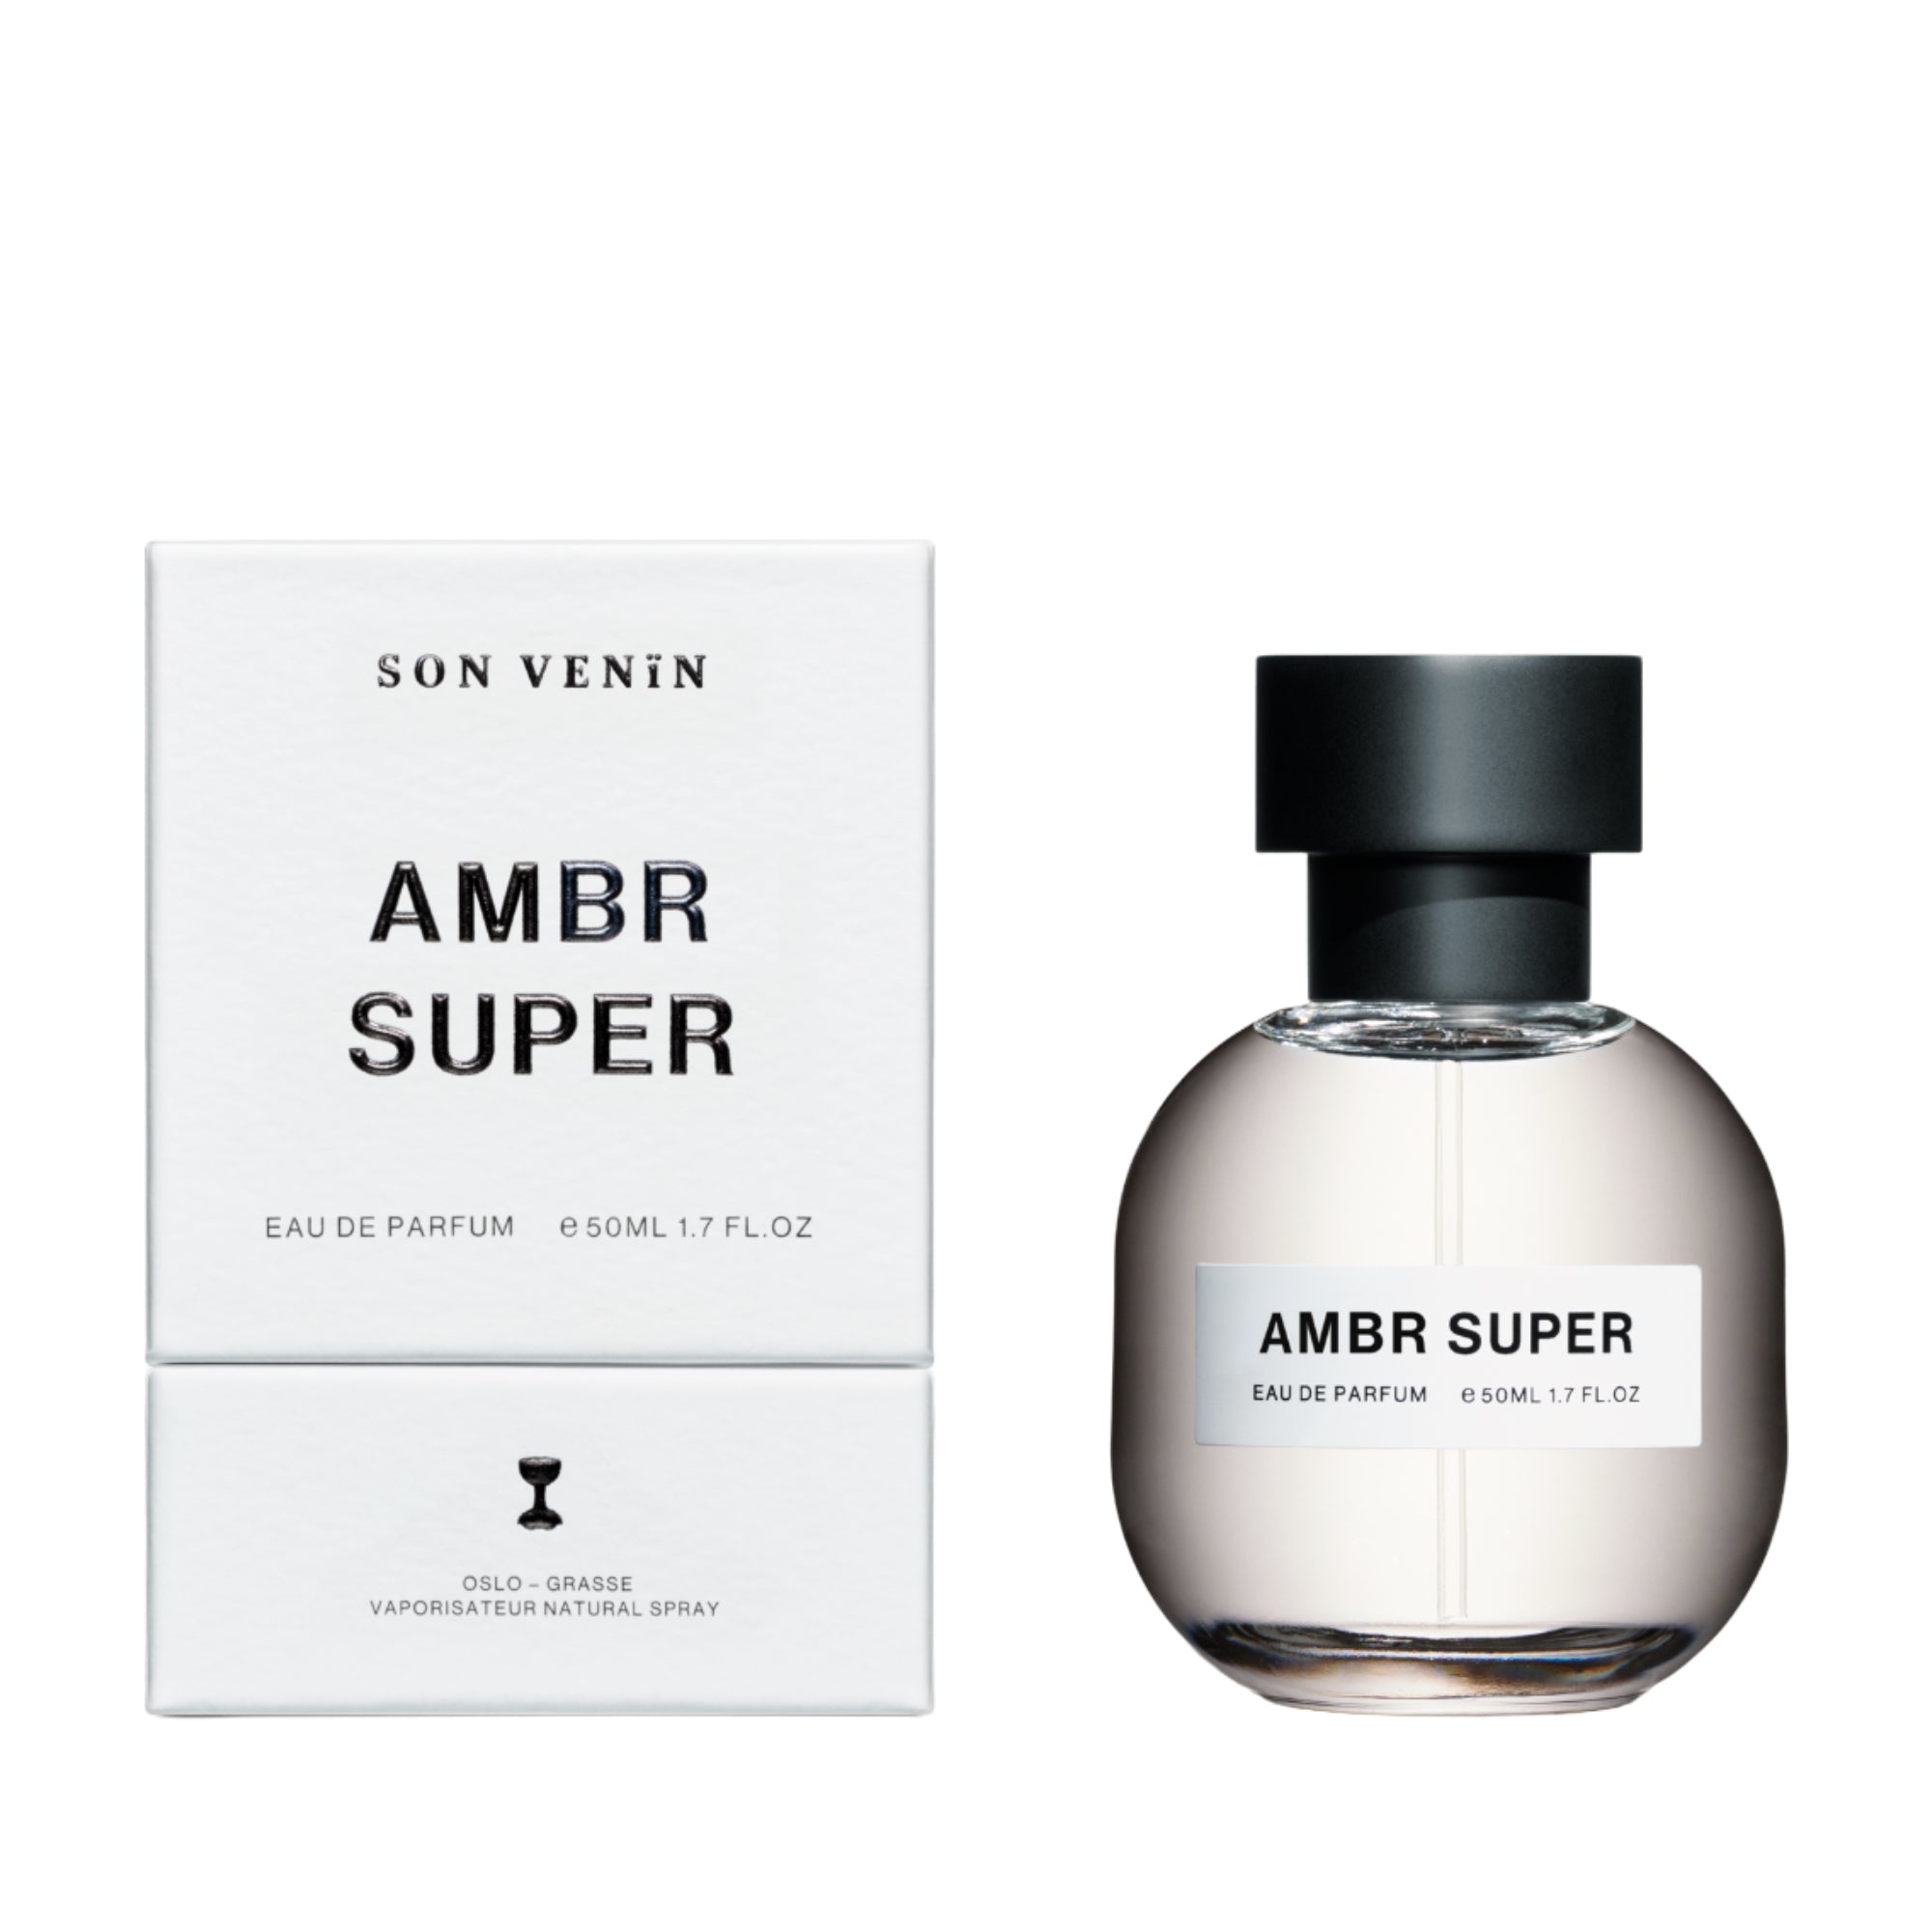 AMBR SUPER Eau de Parfum